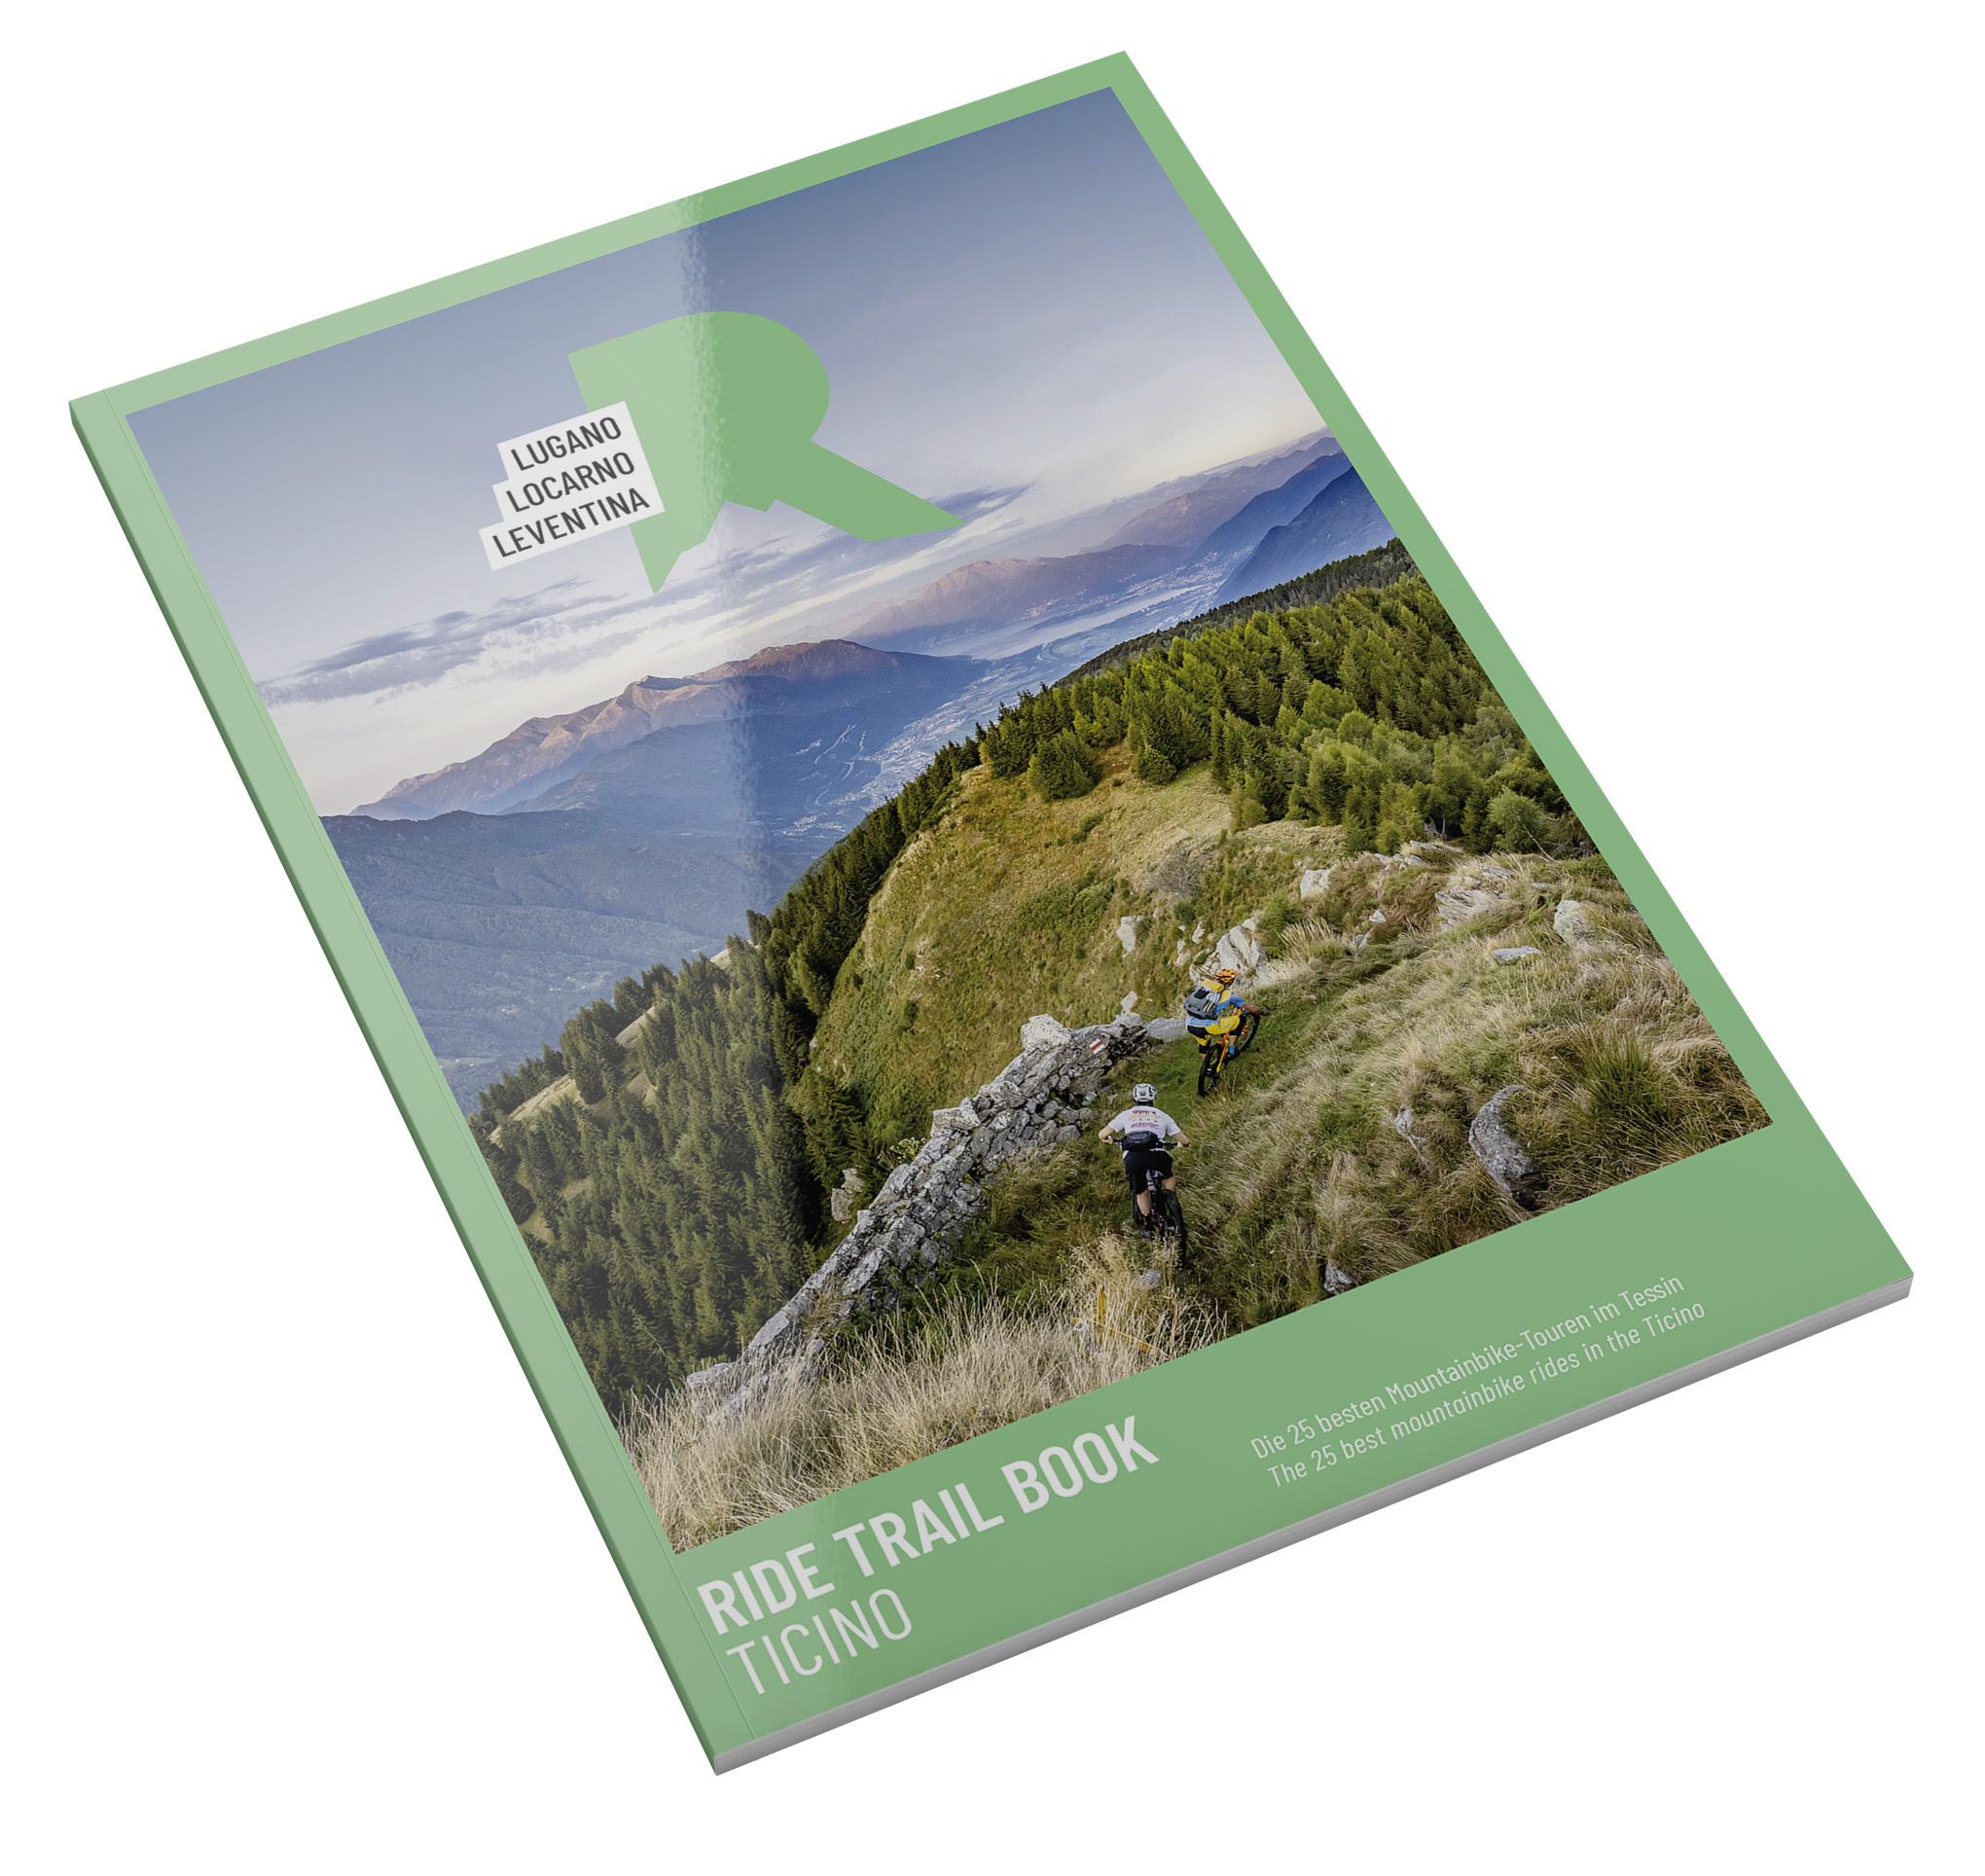 Ride Trail Book Ticino_Cover